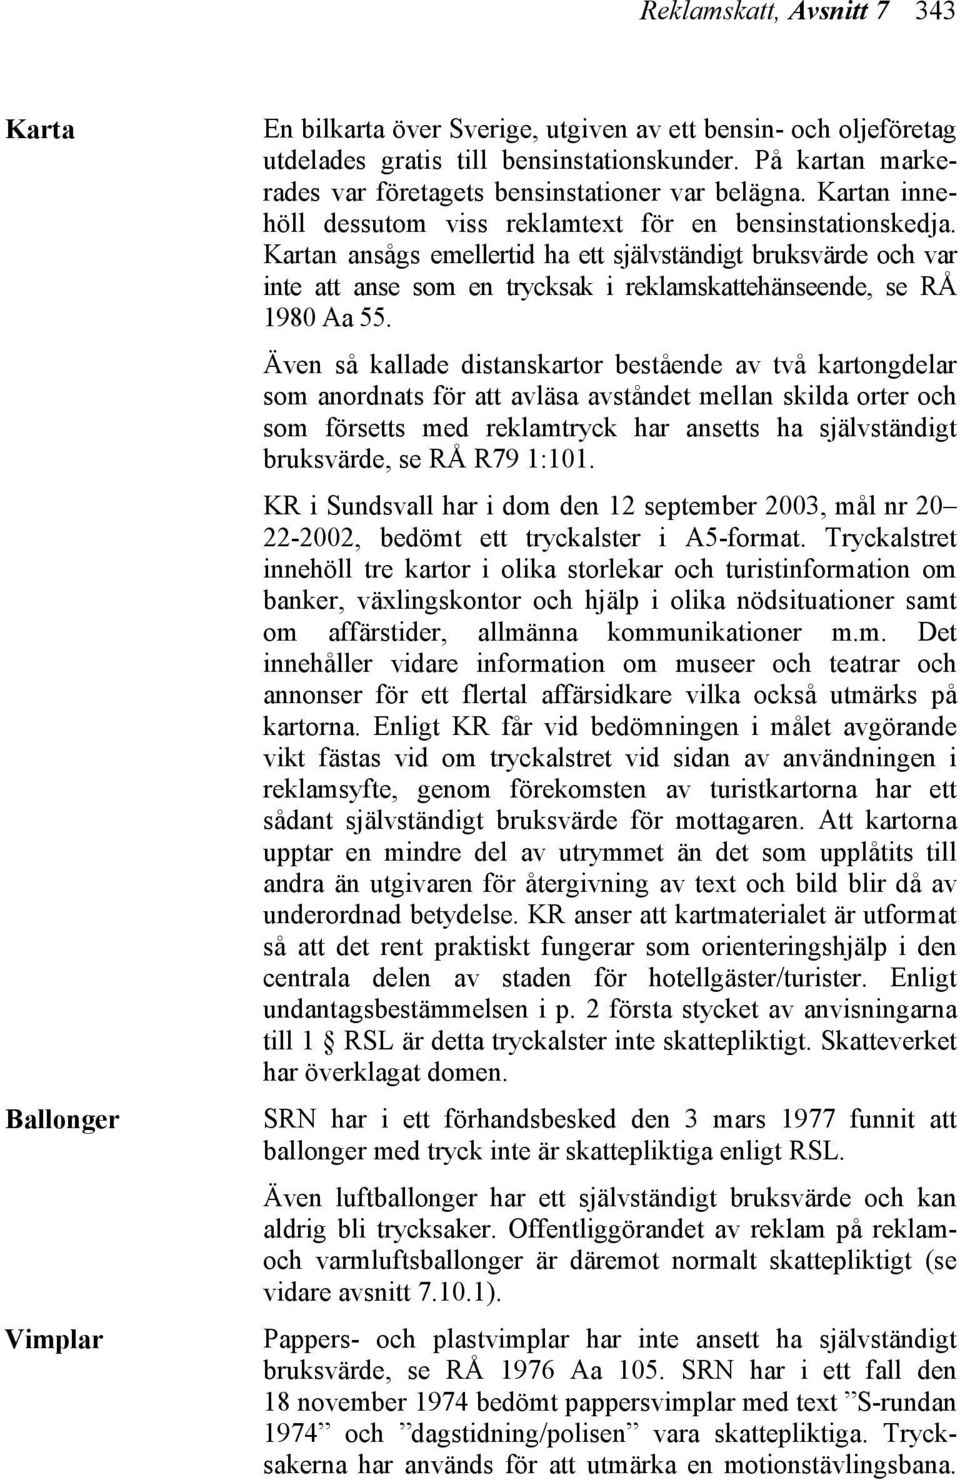 Kartan ansågs emellertid ha ett självständigt bruksvärde och var inte att anse som en trycksak i reklamskattehänseende, se RÅ 1980 Aa 55.